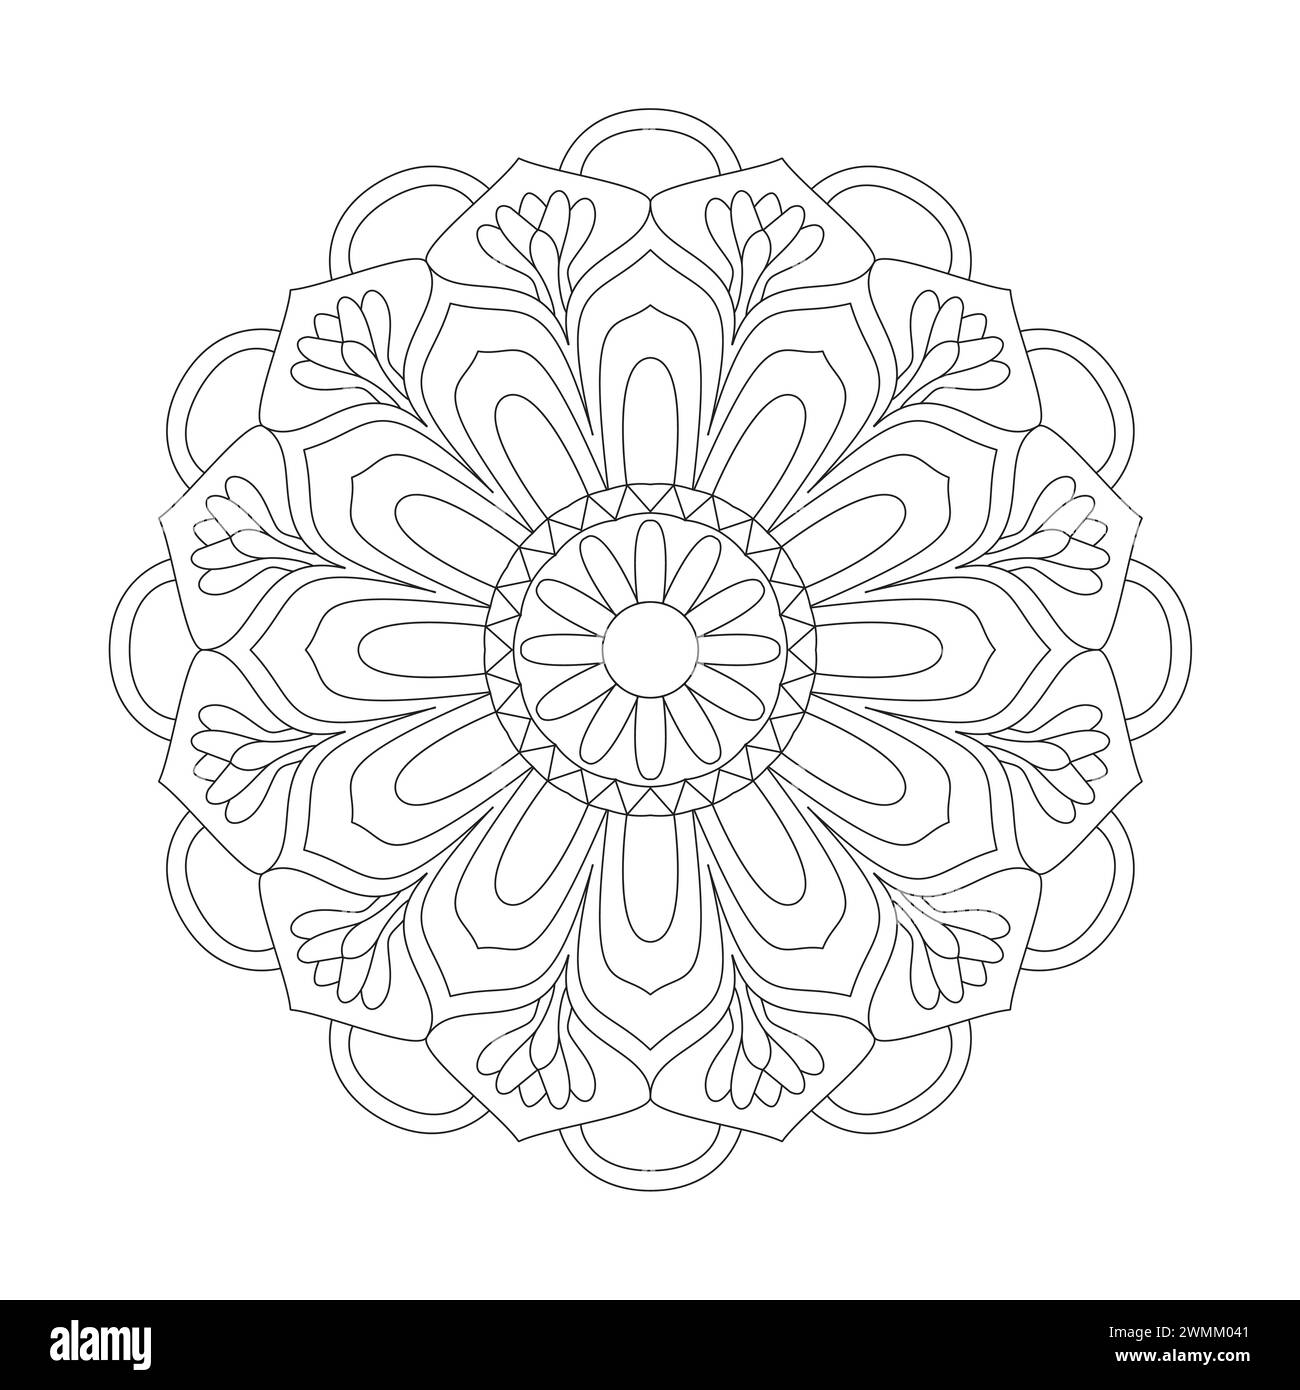 Rätselhafte Dekorative Mandala Malbuchseite für kdp Buchinnenraum. Friedliche Blütenblätter, Fähigkeit zum Entspannen, Gehirnerlebnisse, harmonischer Hafen, Peacefu Stock Vektor